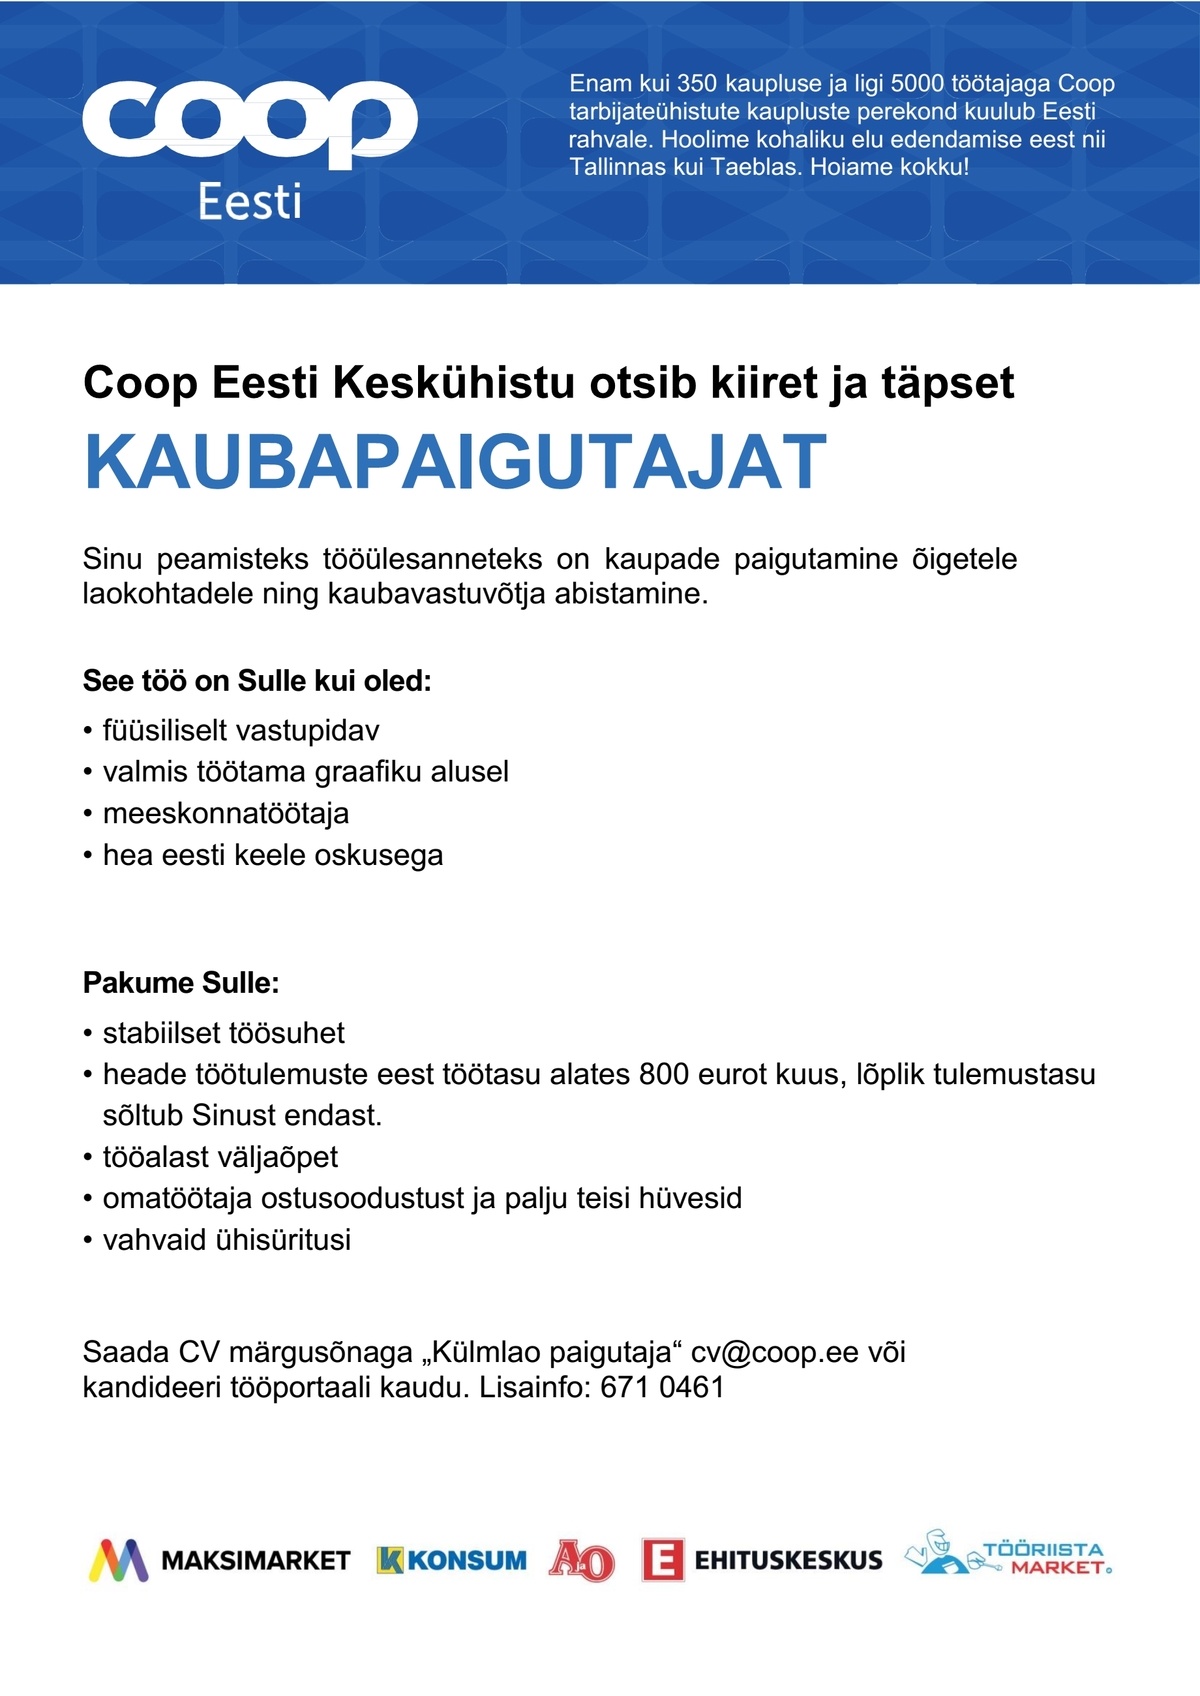 Coop Eesti Keskühistu Kaubapaigutaja (Tallinna külmladu)